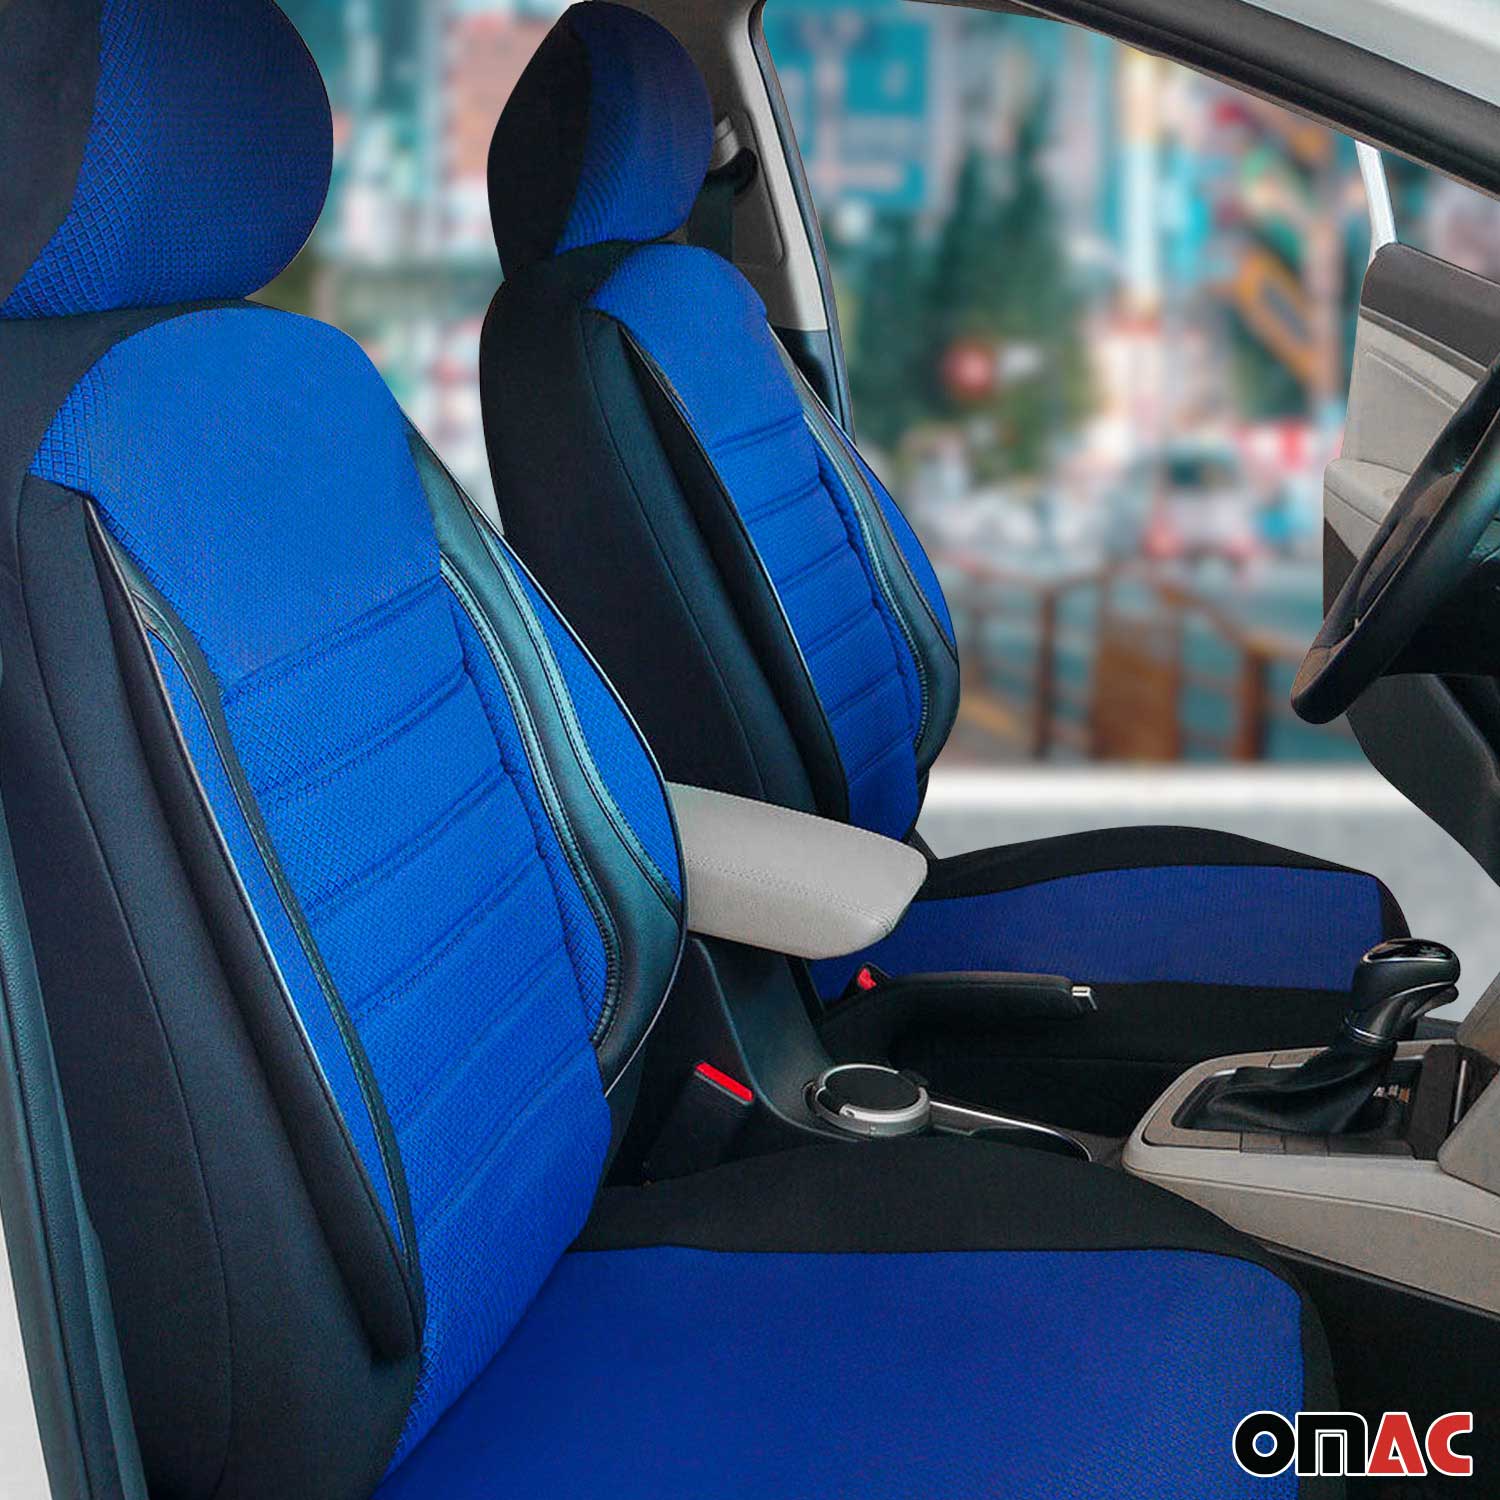 Für Peugeot 207 Schonbezüge Sitzbezug Sitzbezüge Schwarz Blau Vorne Satz 1+1